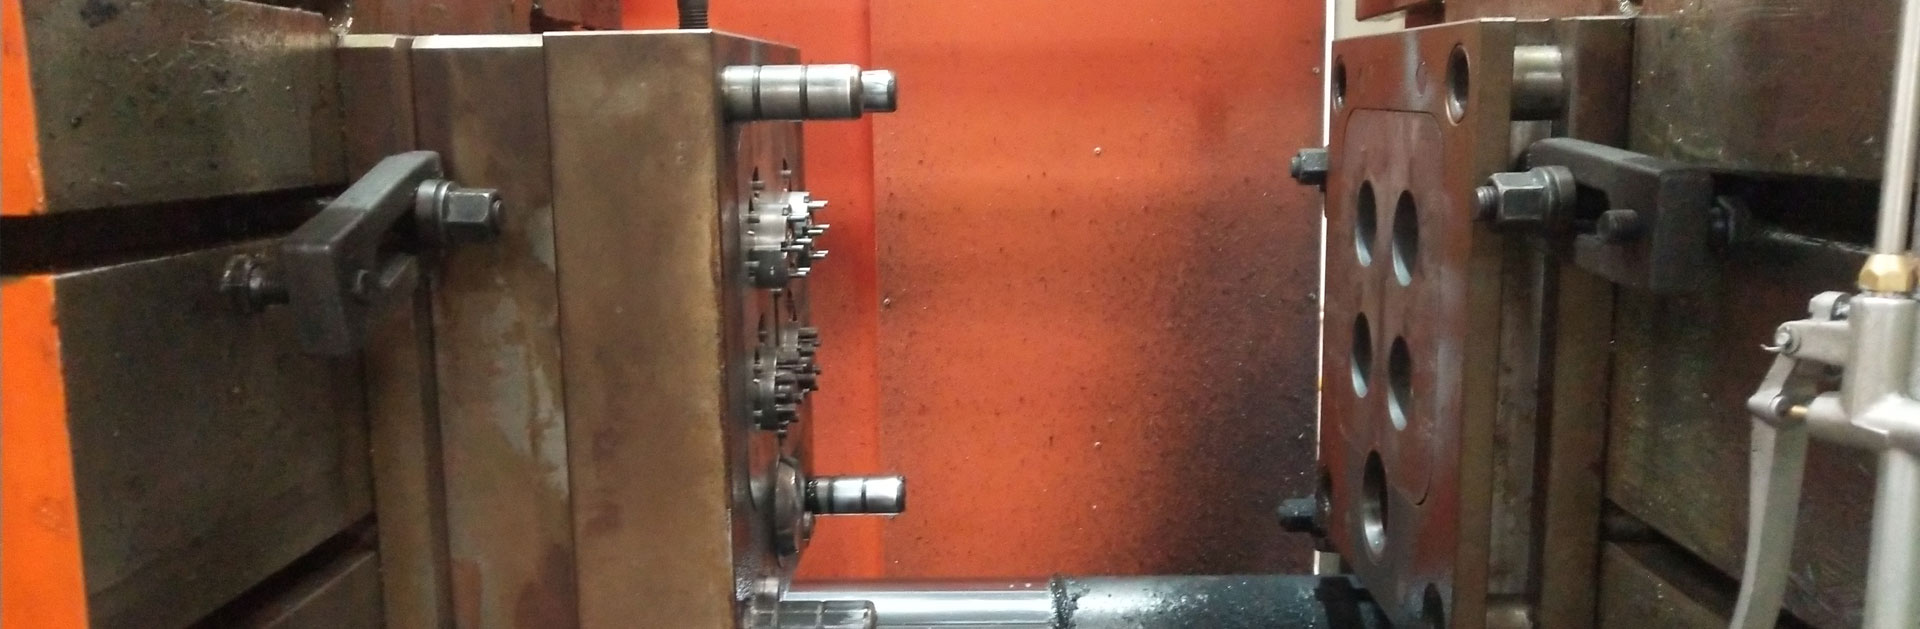 Ferramentas de fundición a presión - Fabricación de moldes de fundición a presión - Deseño para fabricación